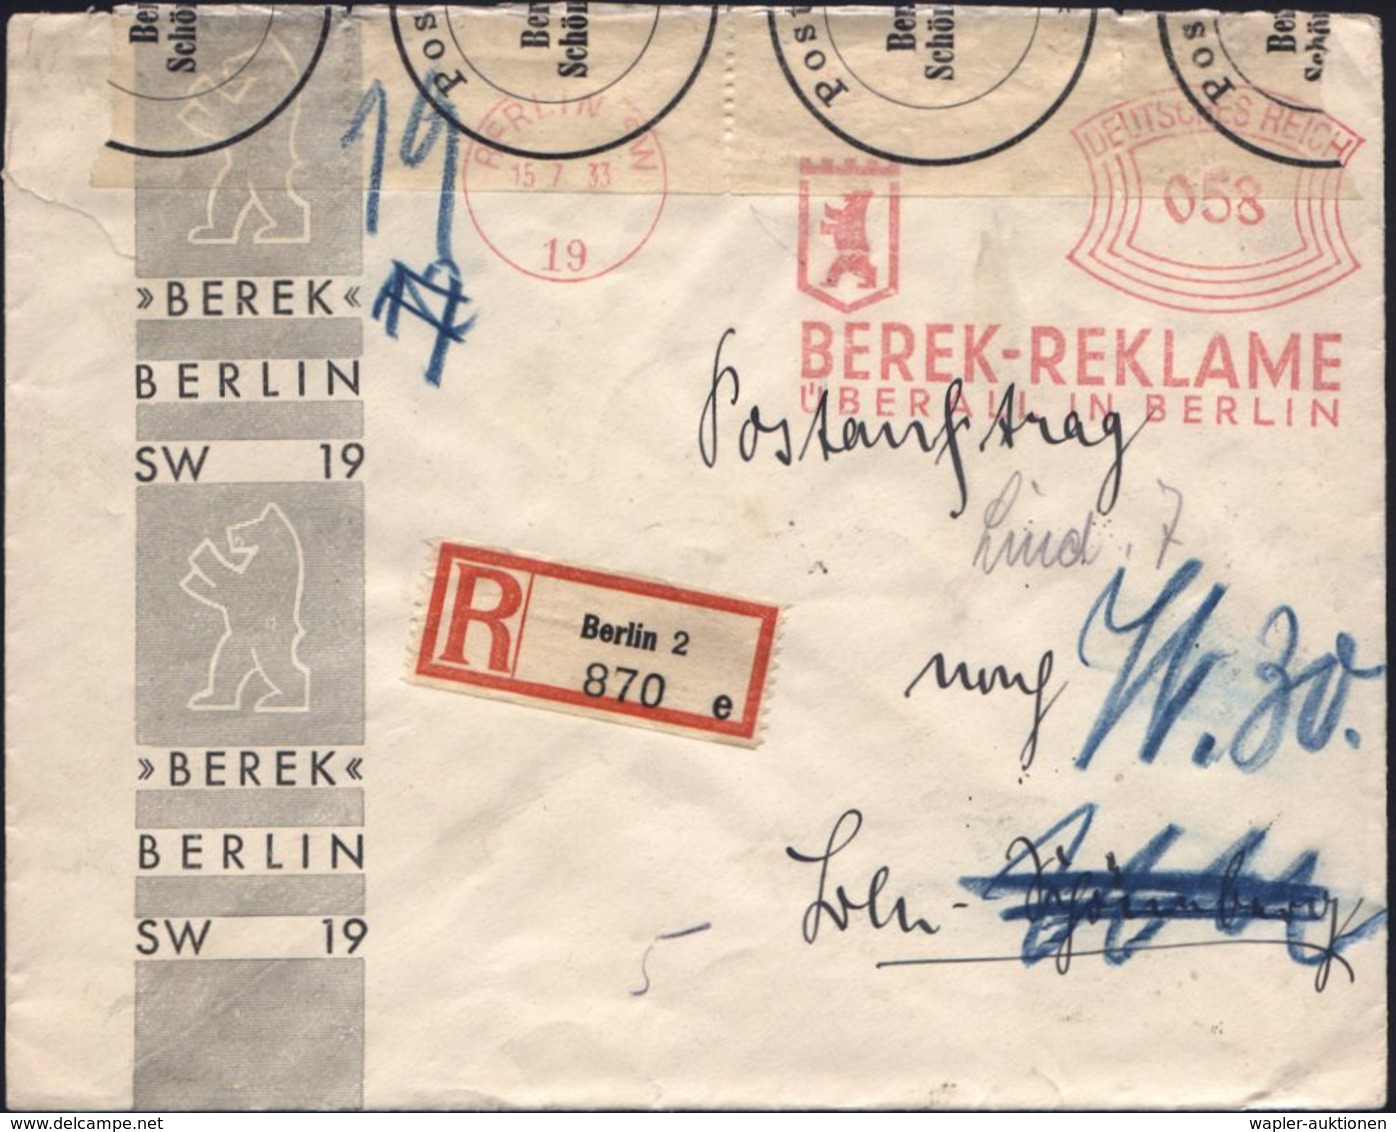 BERLIN SW/ 19/ BEREK-REKLAME/ ÜBERALL IN BERLIN 1933 (15.7.) AFS 058 Pf. = BVG-Tochterfirma Für S- Und U-Bahn-Reklame Ve - Trains